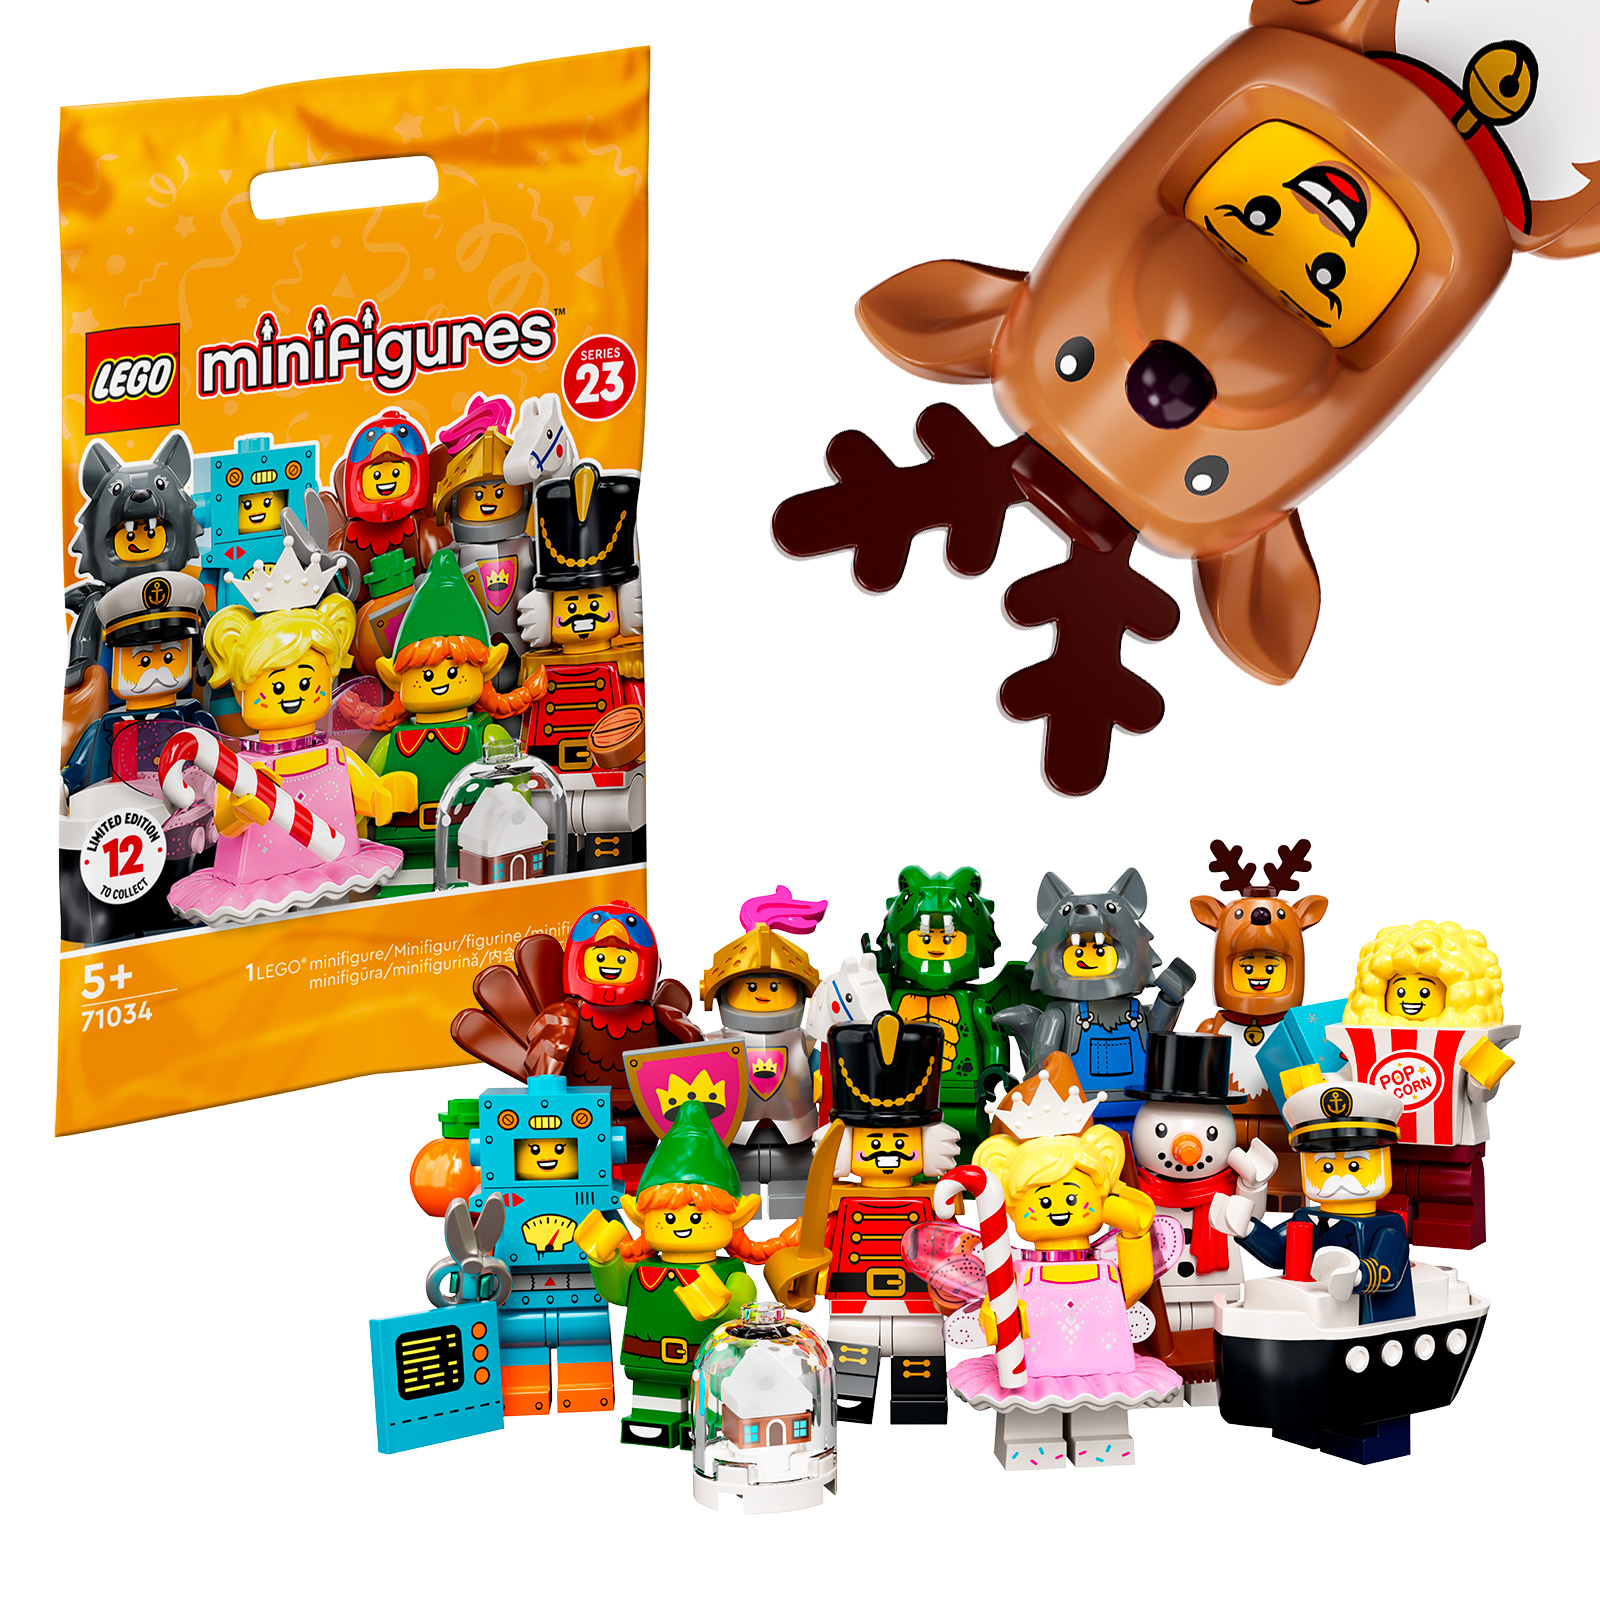 LEGO 71034 gyűjthető minifigurák, 23-as sorozat: az összes karakter a boltban van